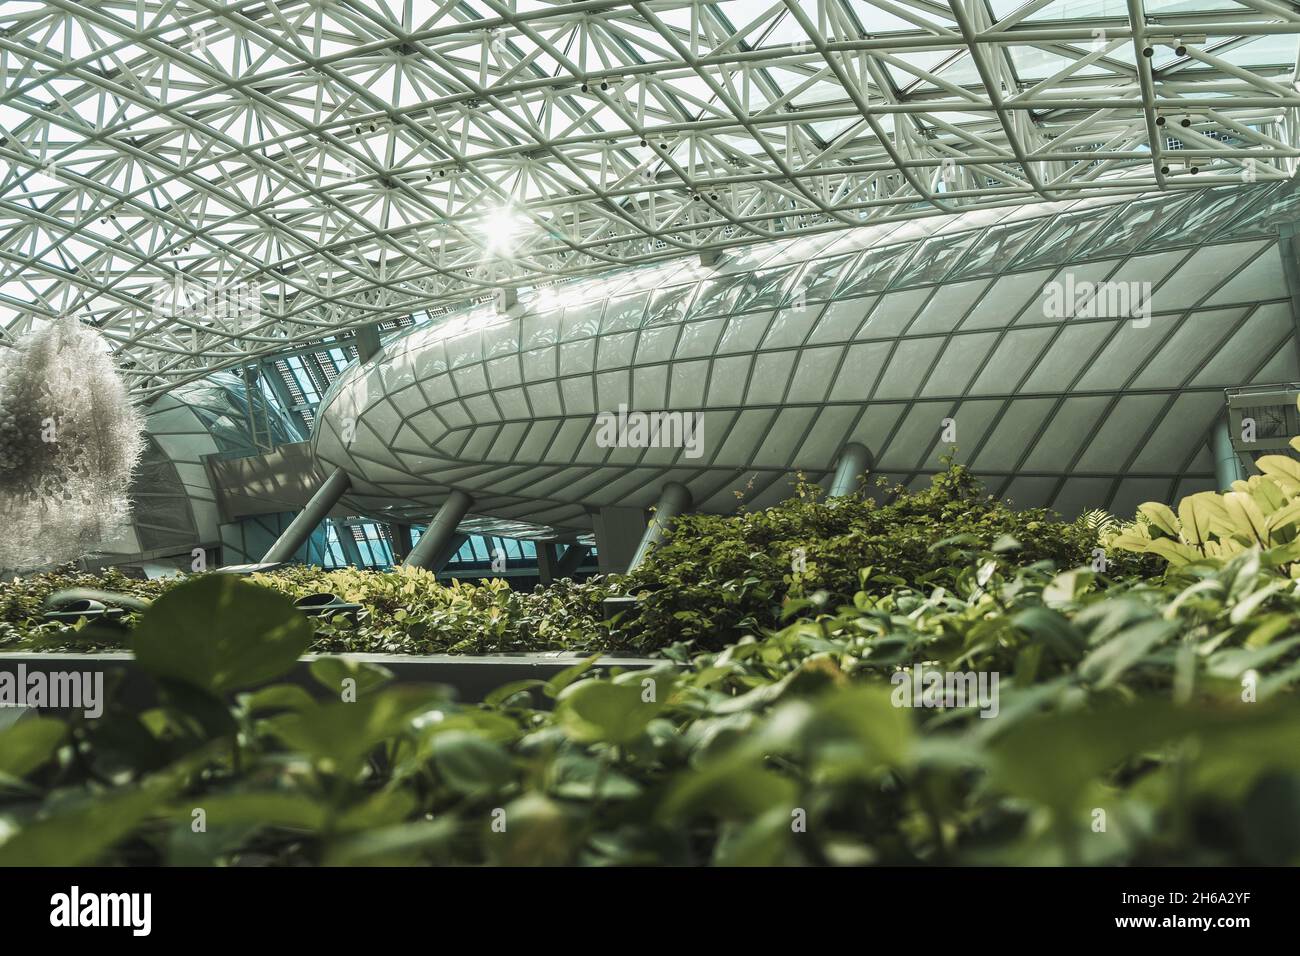 Botanischer Garten in der Metropole. Modernes Gebäude mit Glasdecke und Wänden in der Großstadt. Das Innere des städtischen Gebäudes mit Pflanzen. Stockfoto